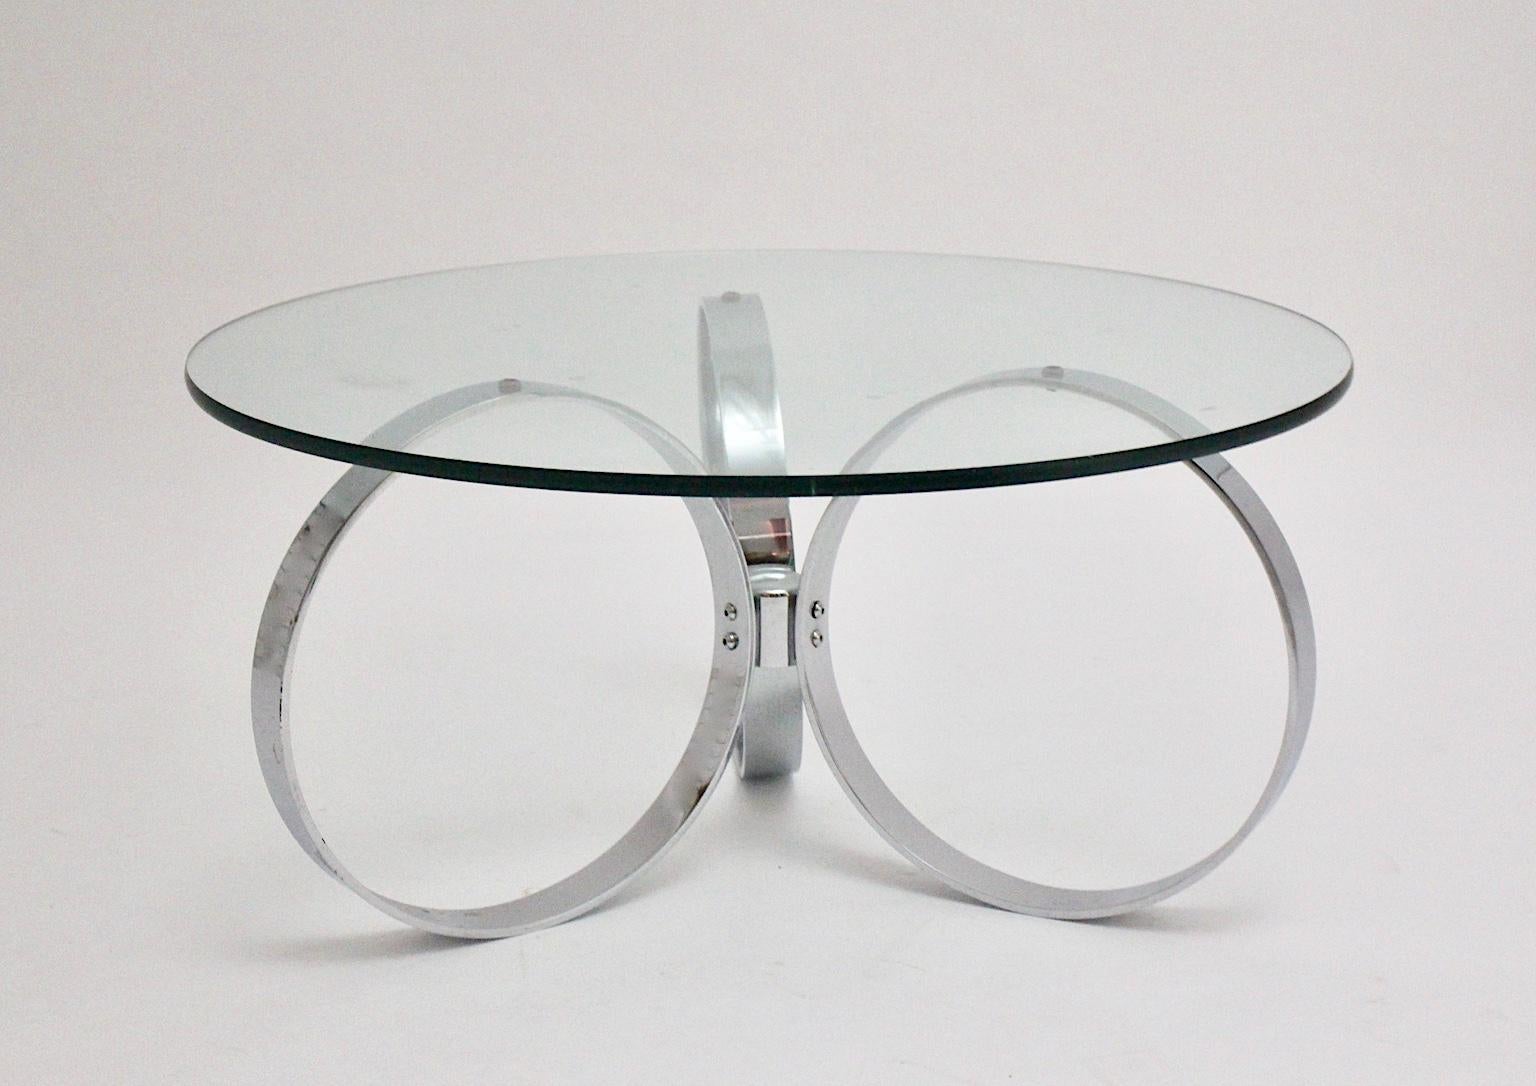 space Age Vintage Couchtisch / Sofatisch, die eine verchromte Basis mit drei Ringen gebildet zeigt. Eine klare Glasplatte krönt den Tisch, während das verchromte Metallgestell ein futuristisches Aussehen erzeugt. In den 1960er Jahren schätzten die